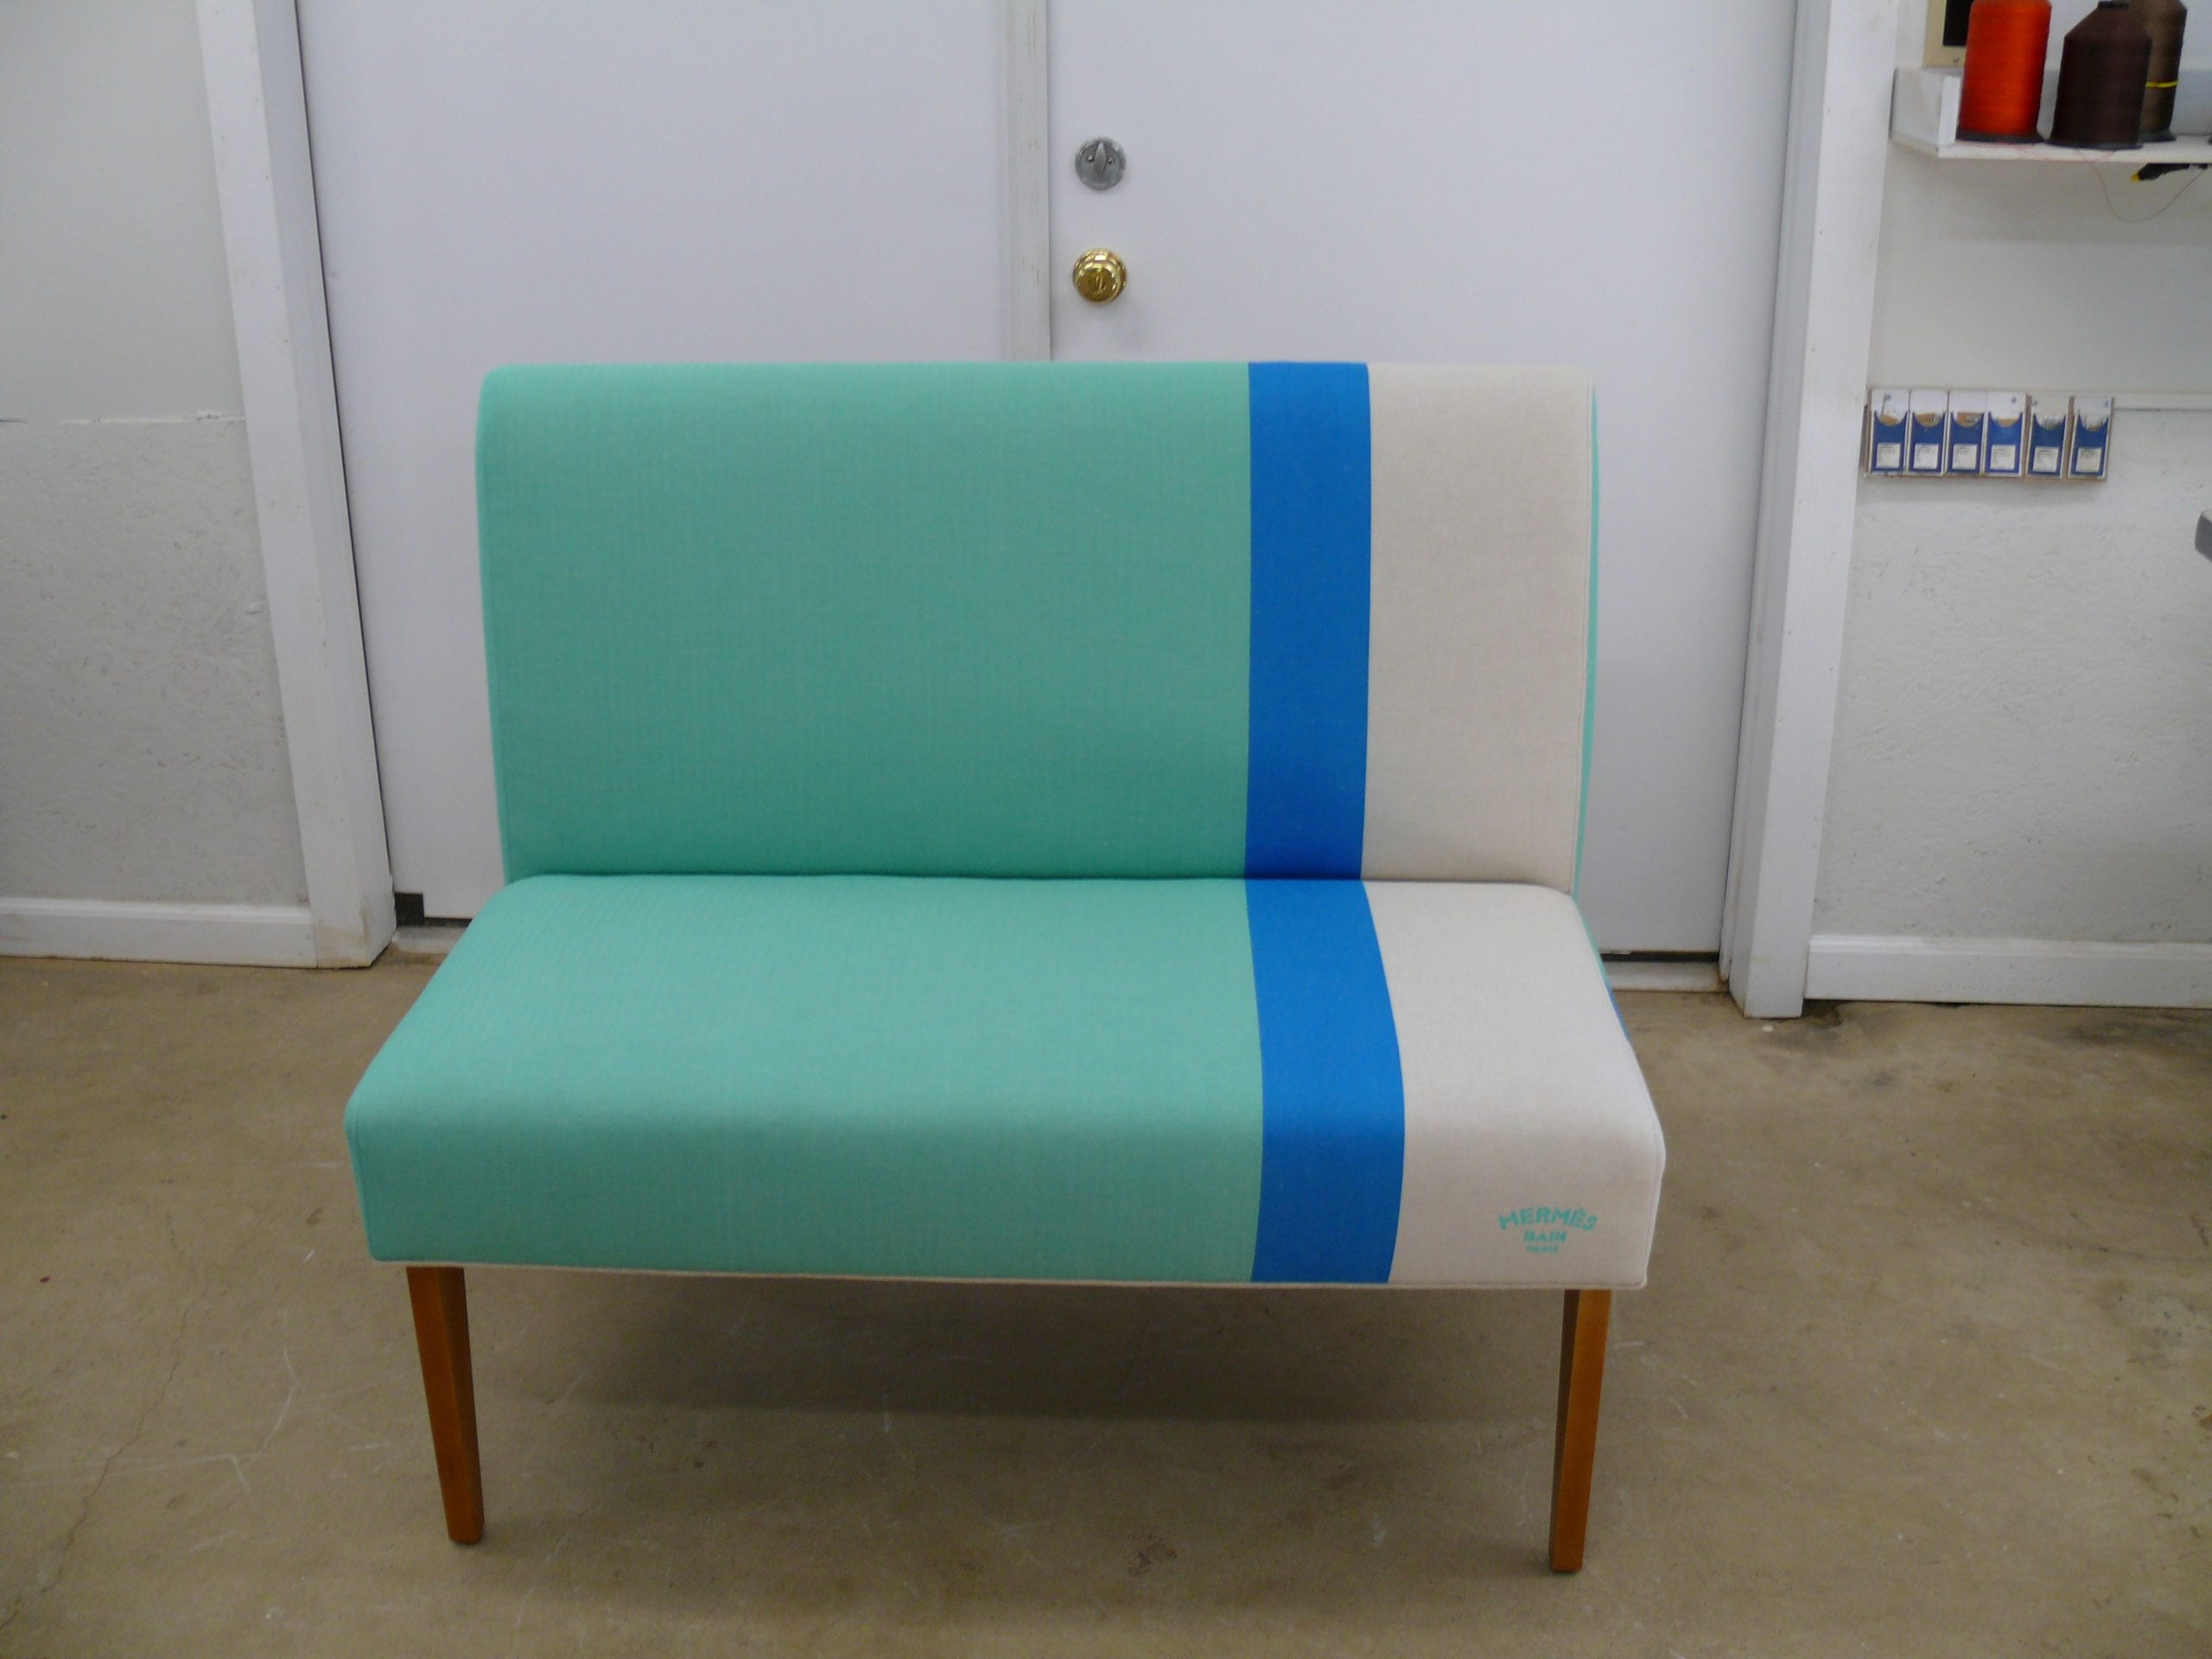 Custom upholstered bench